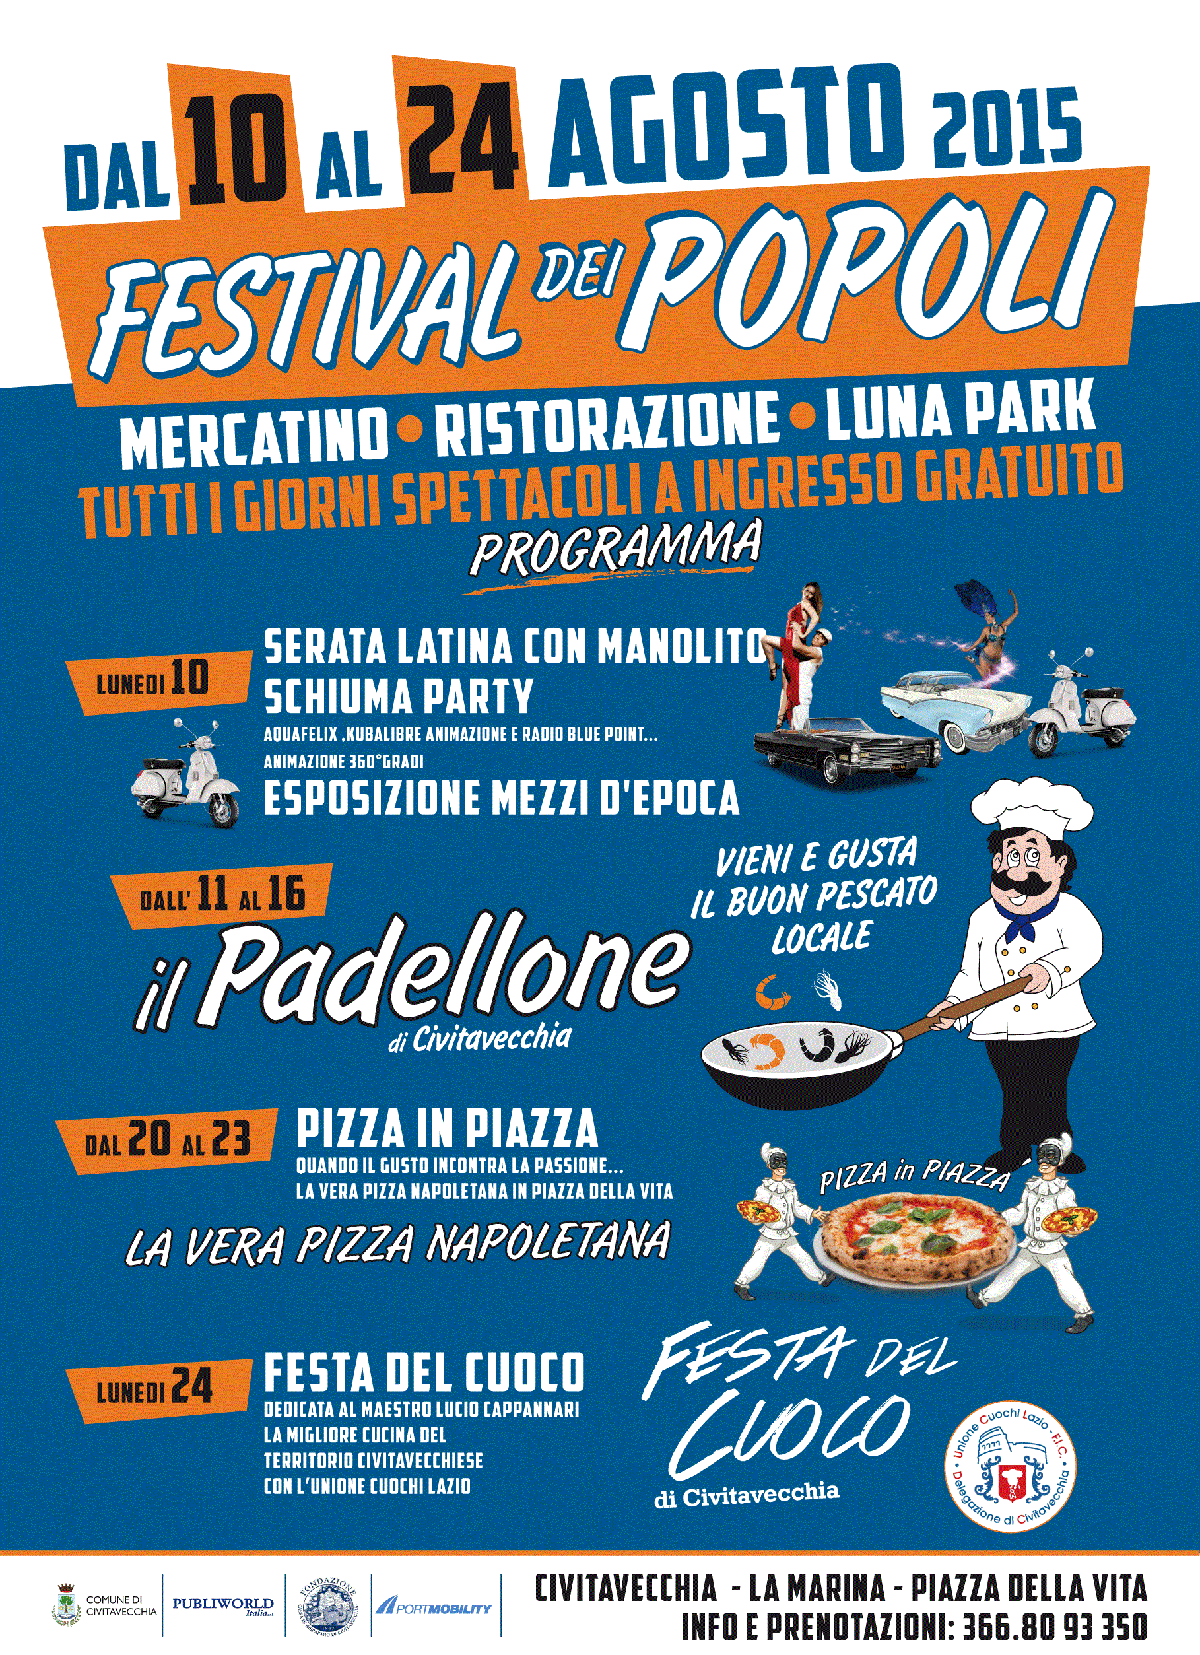 Poster for Festival dei Popoli 2015 in Civitavecchia